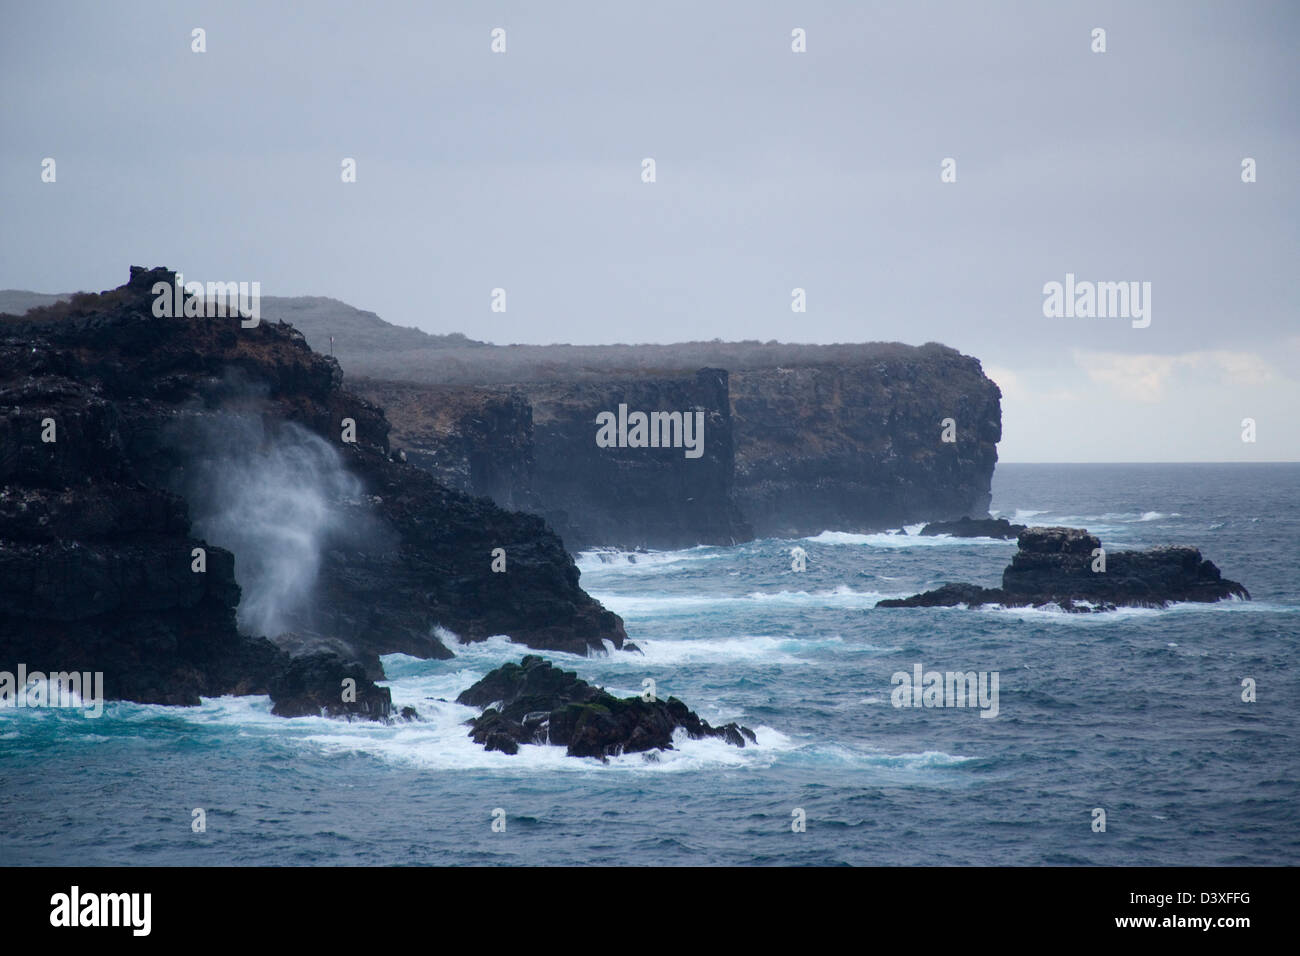 Ecuador, Galápagos Islands, Isla Espanola (Hood), rough seas at the cliffs of Punta Suarez Stock Photo